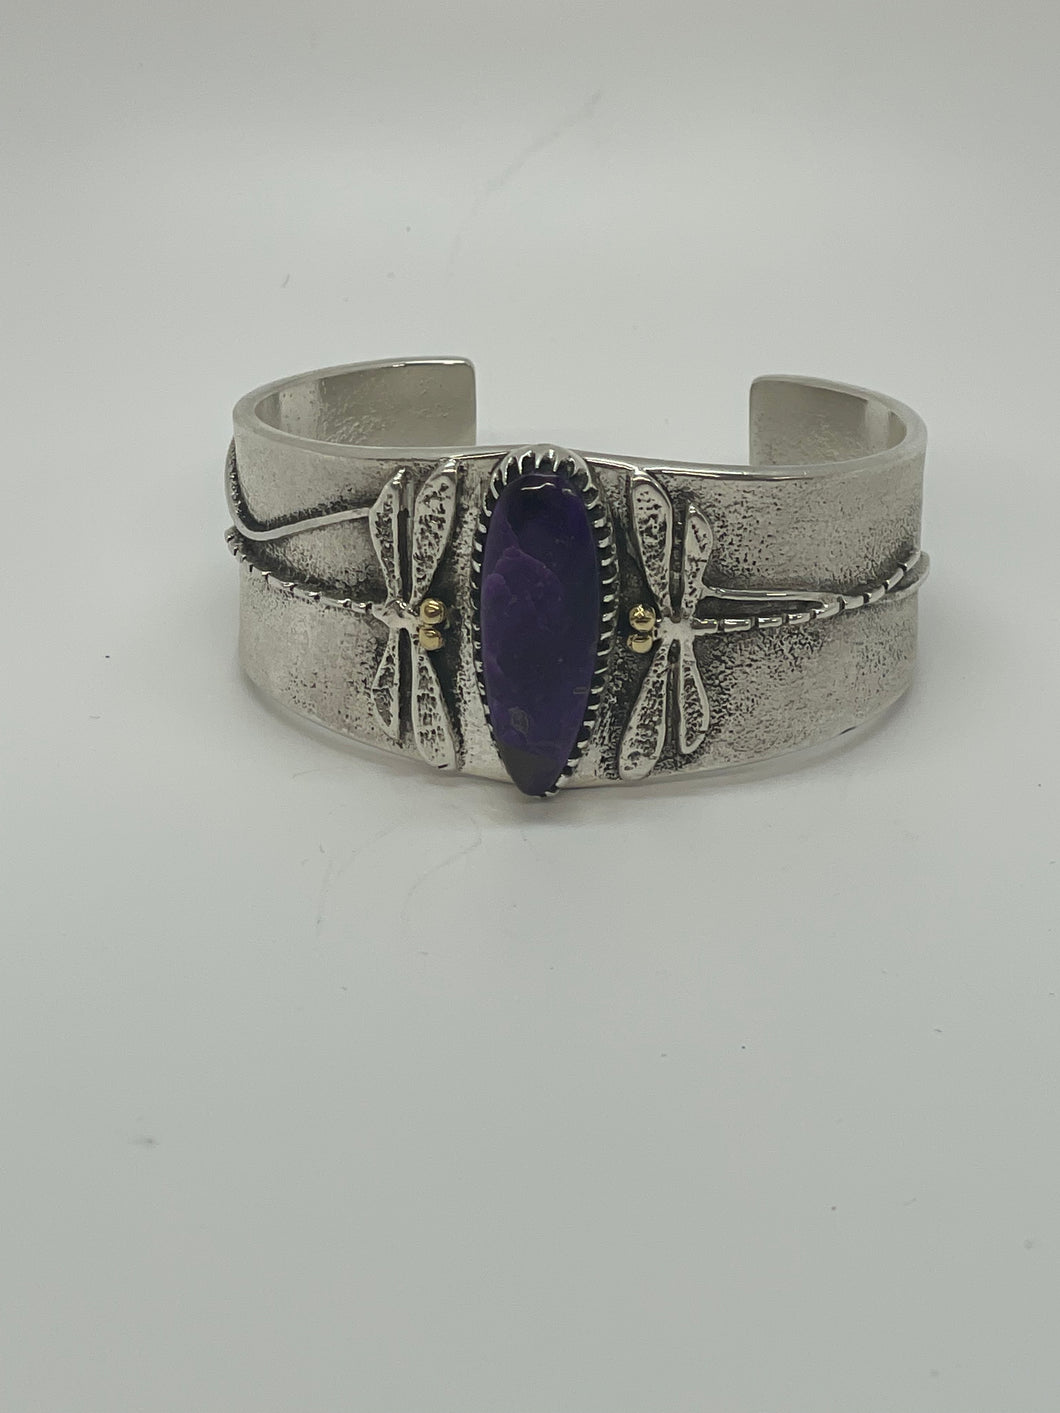 Native American Bracelet